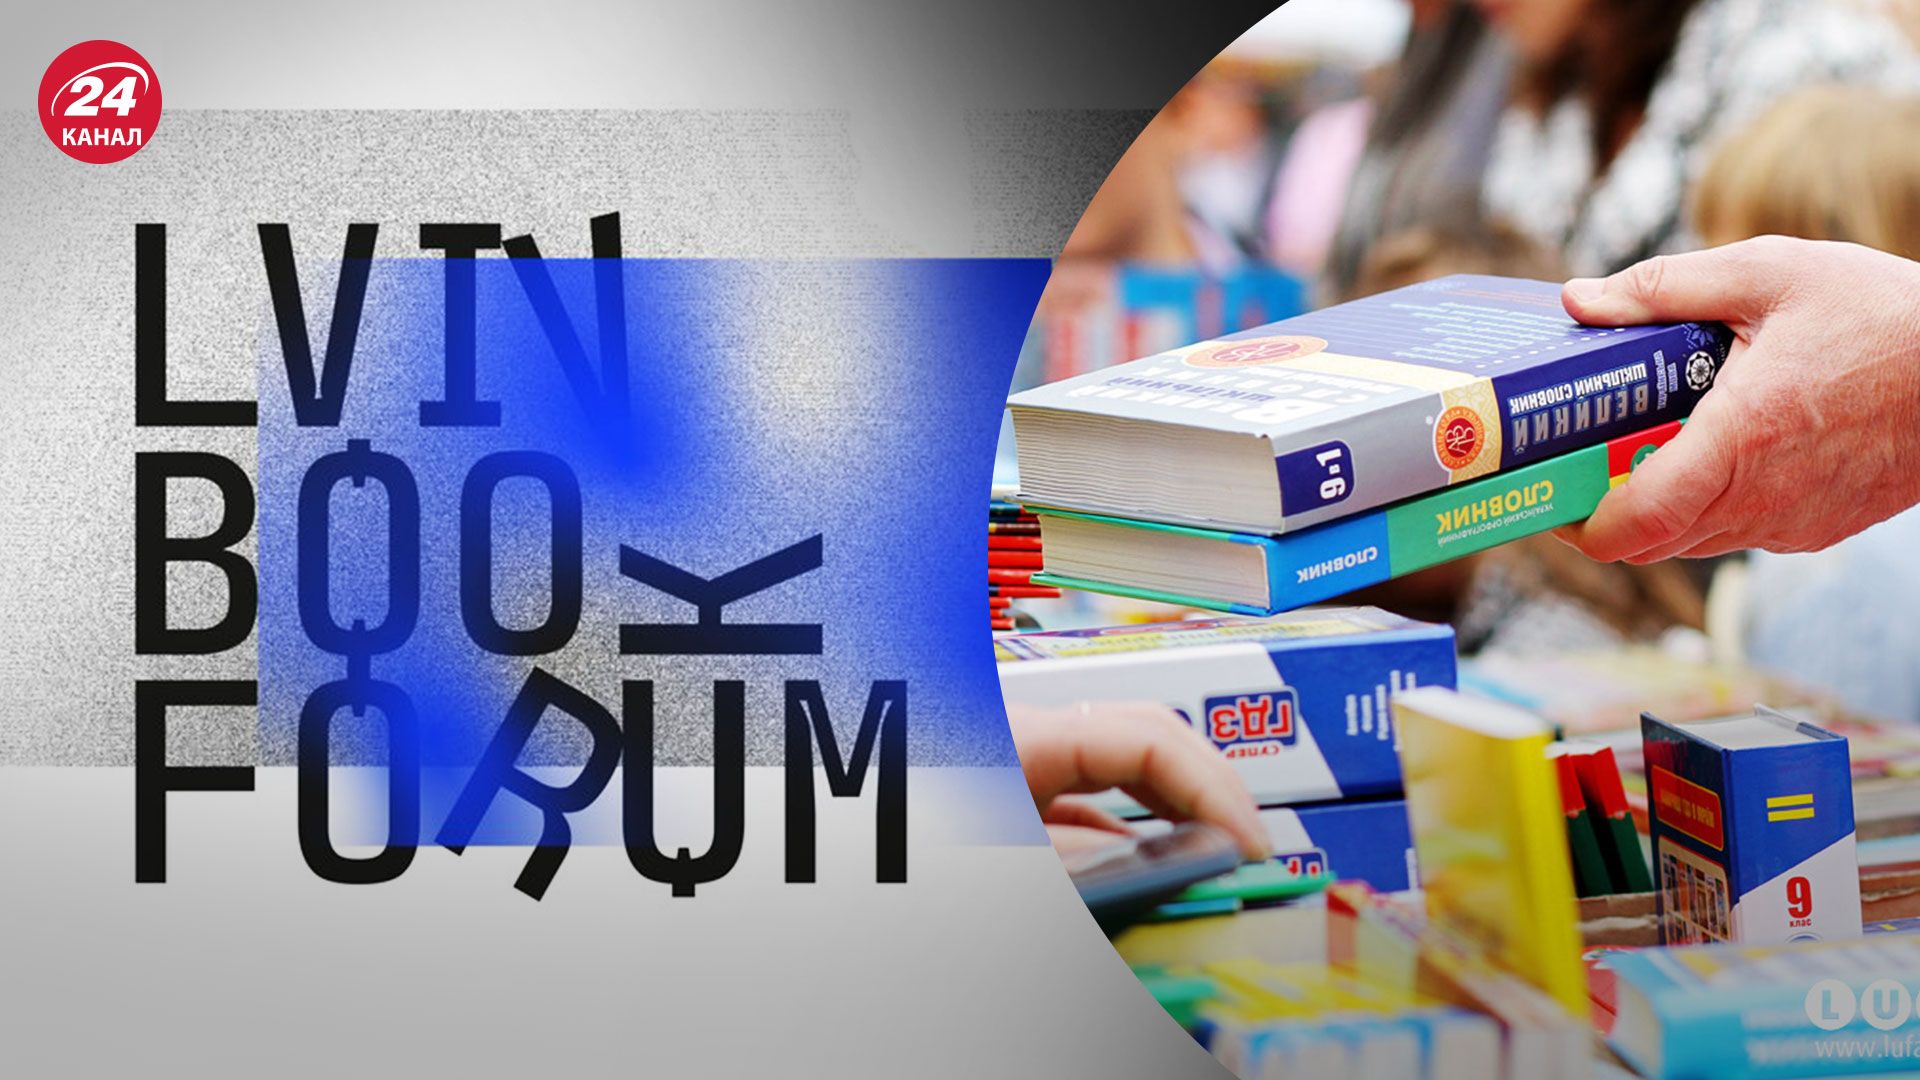 Bookforum 2022 - які події 29 – го BookForum відвідати - 24 канал - Освіта